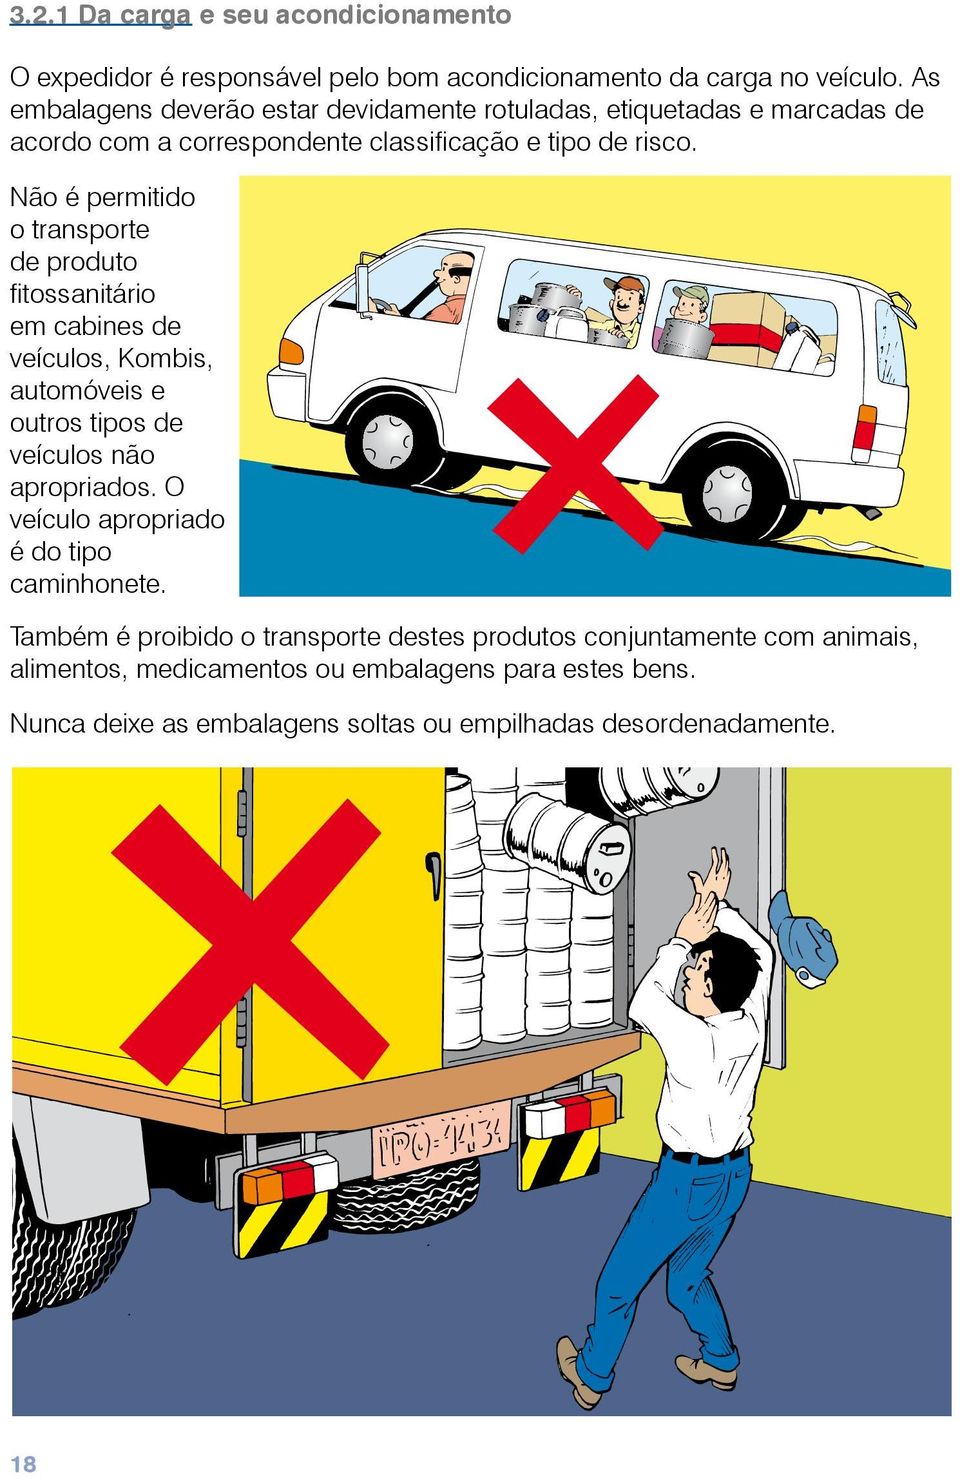 Não é permitido o transporte de produto fitossanitário em cabines de veículos, Kombis, automóveis e outros tipos de veículos não apropriados.